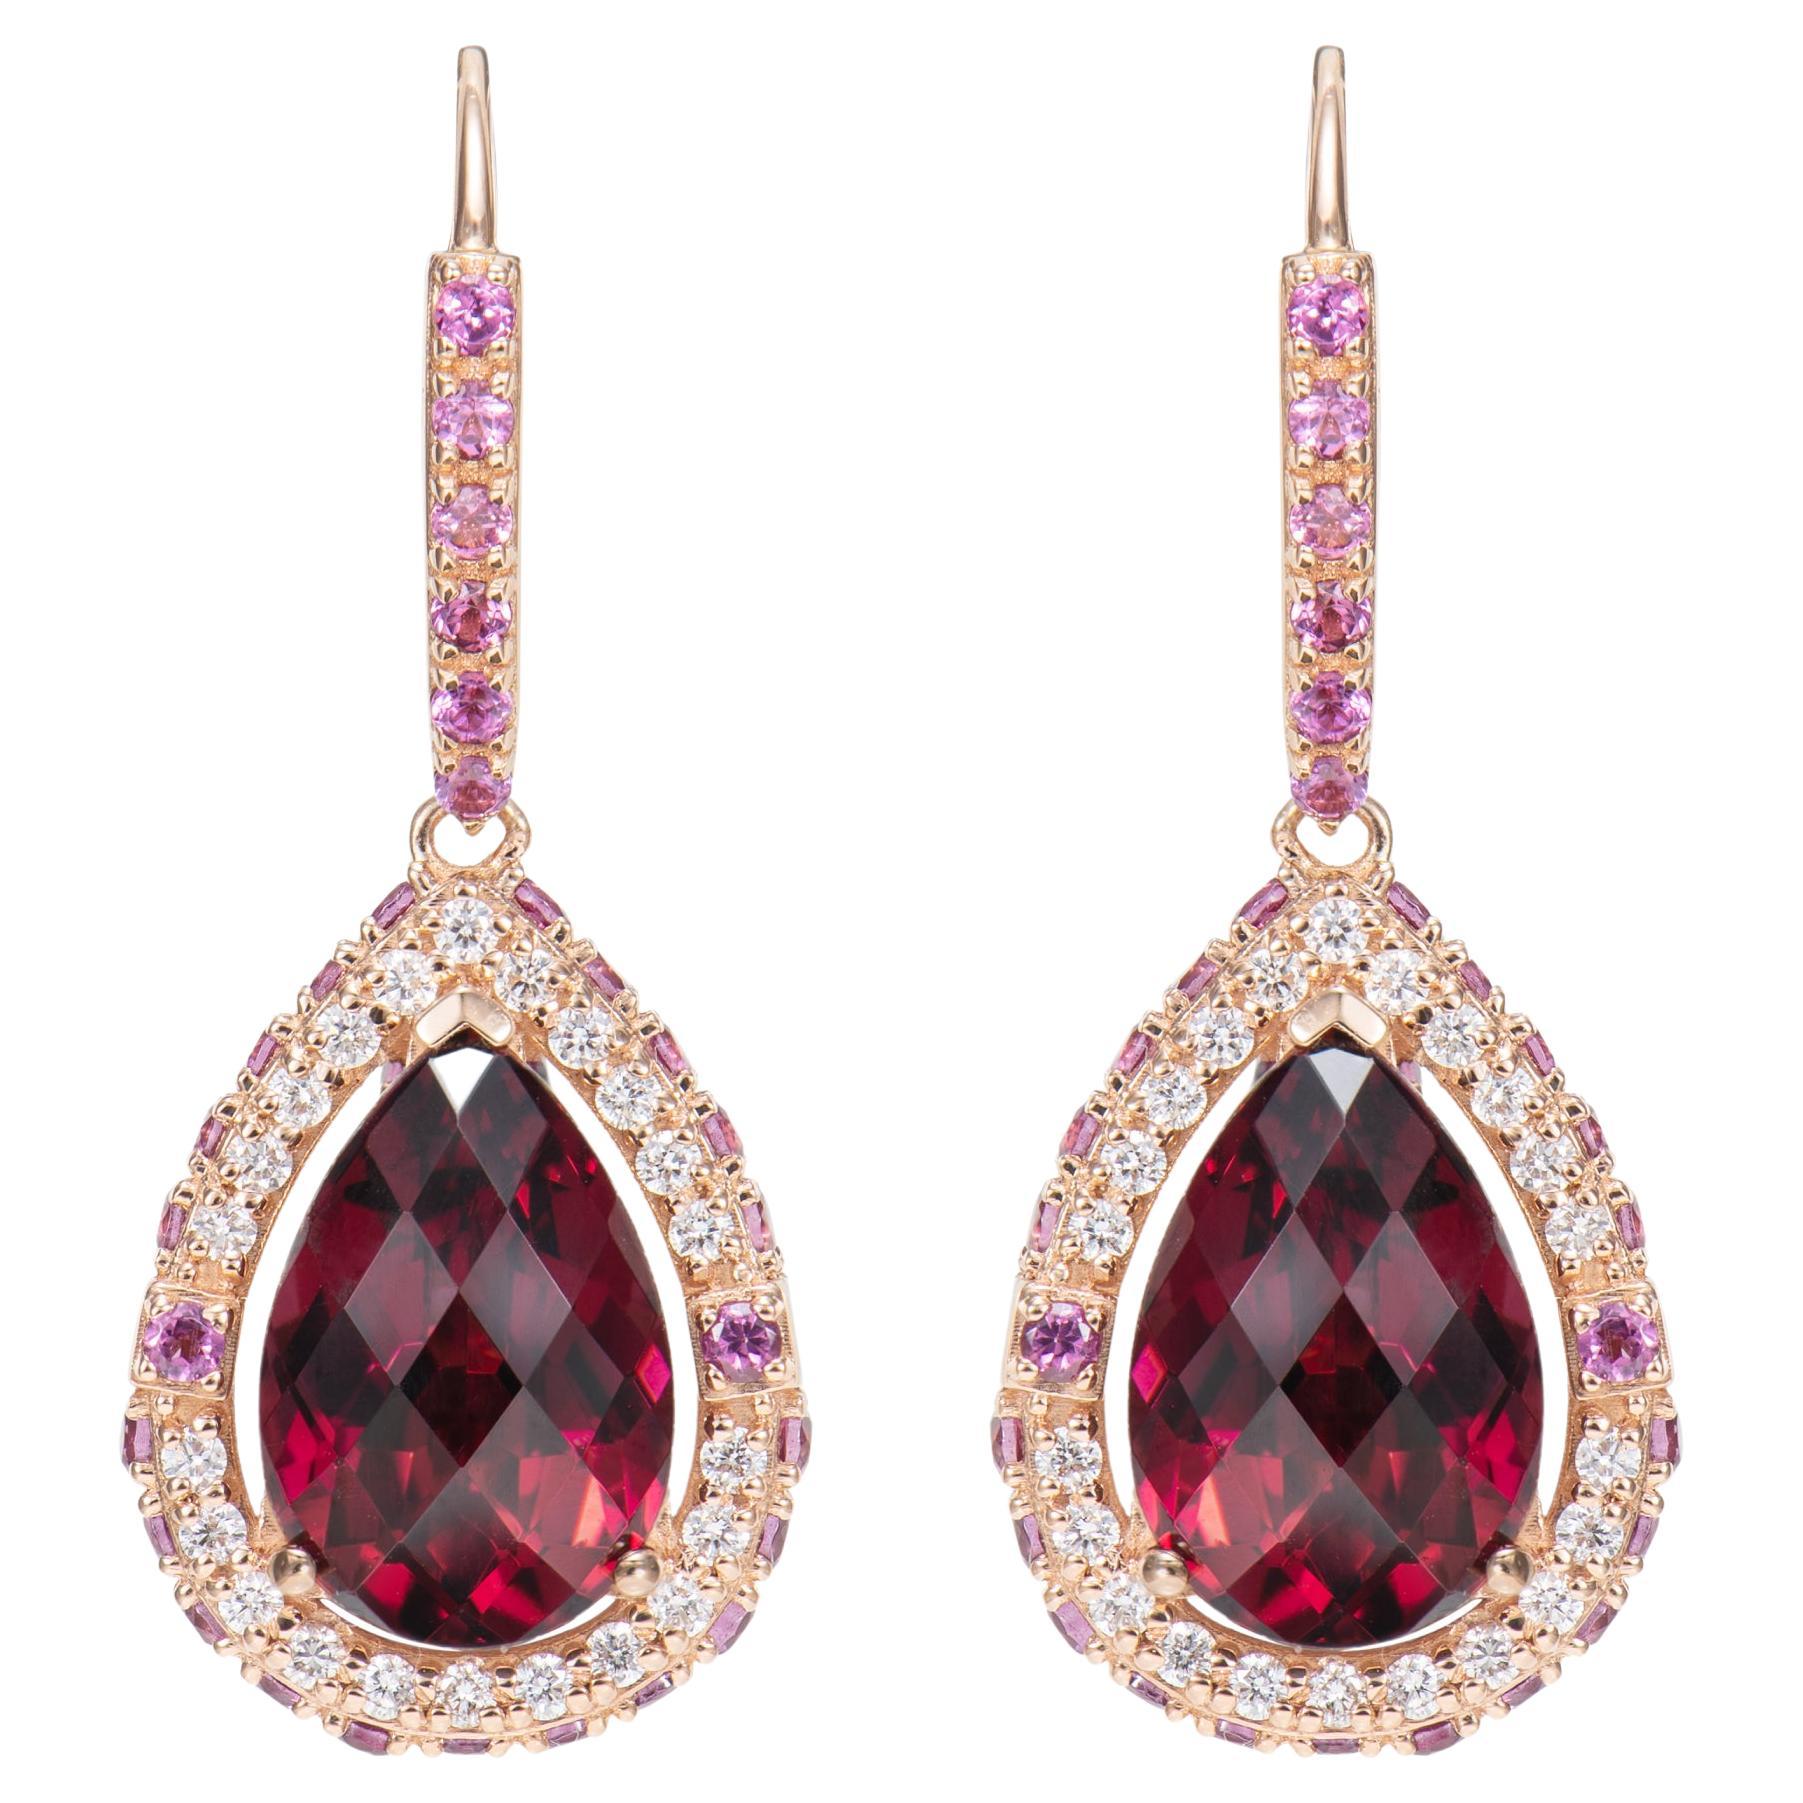 Boucles d'oreilles pendantes en or rose 18 carats et rhodolite de 8,8 carats avec diamants blancs